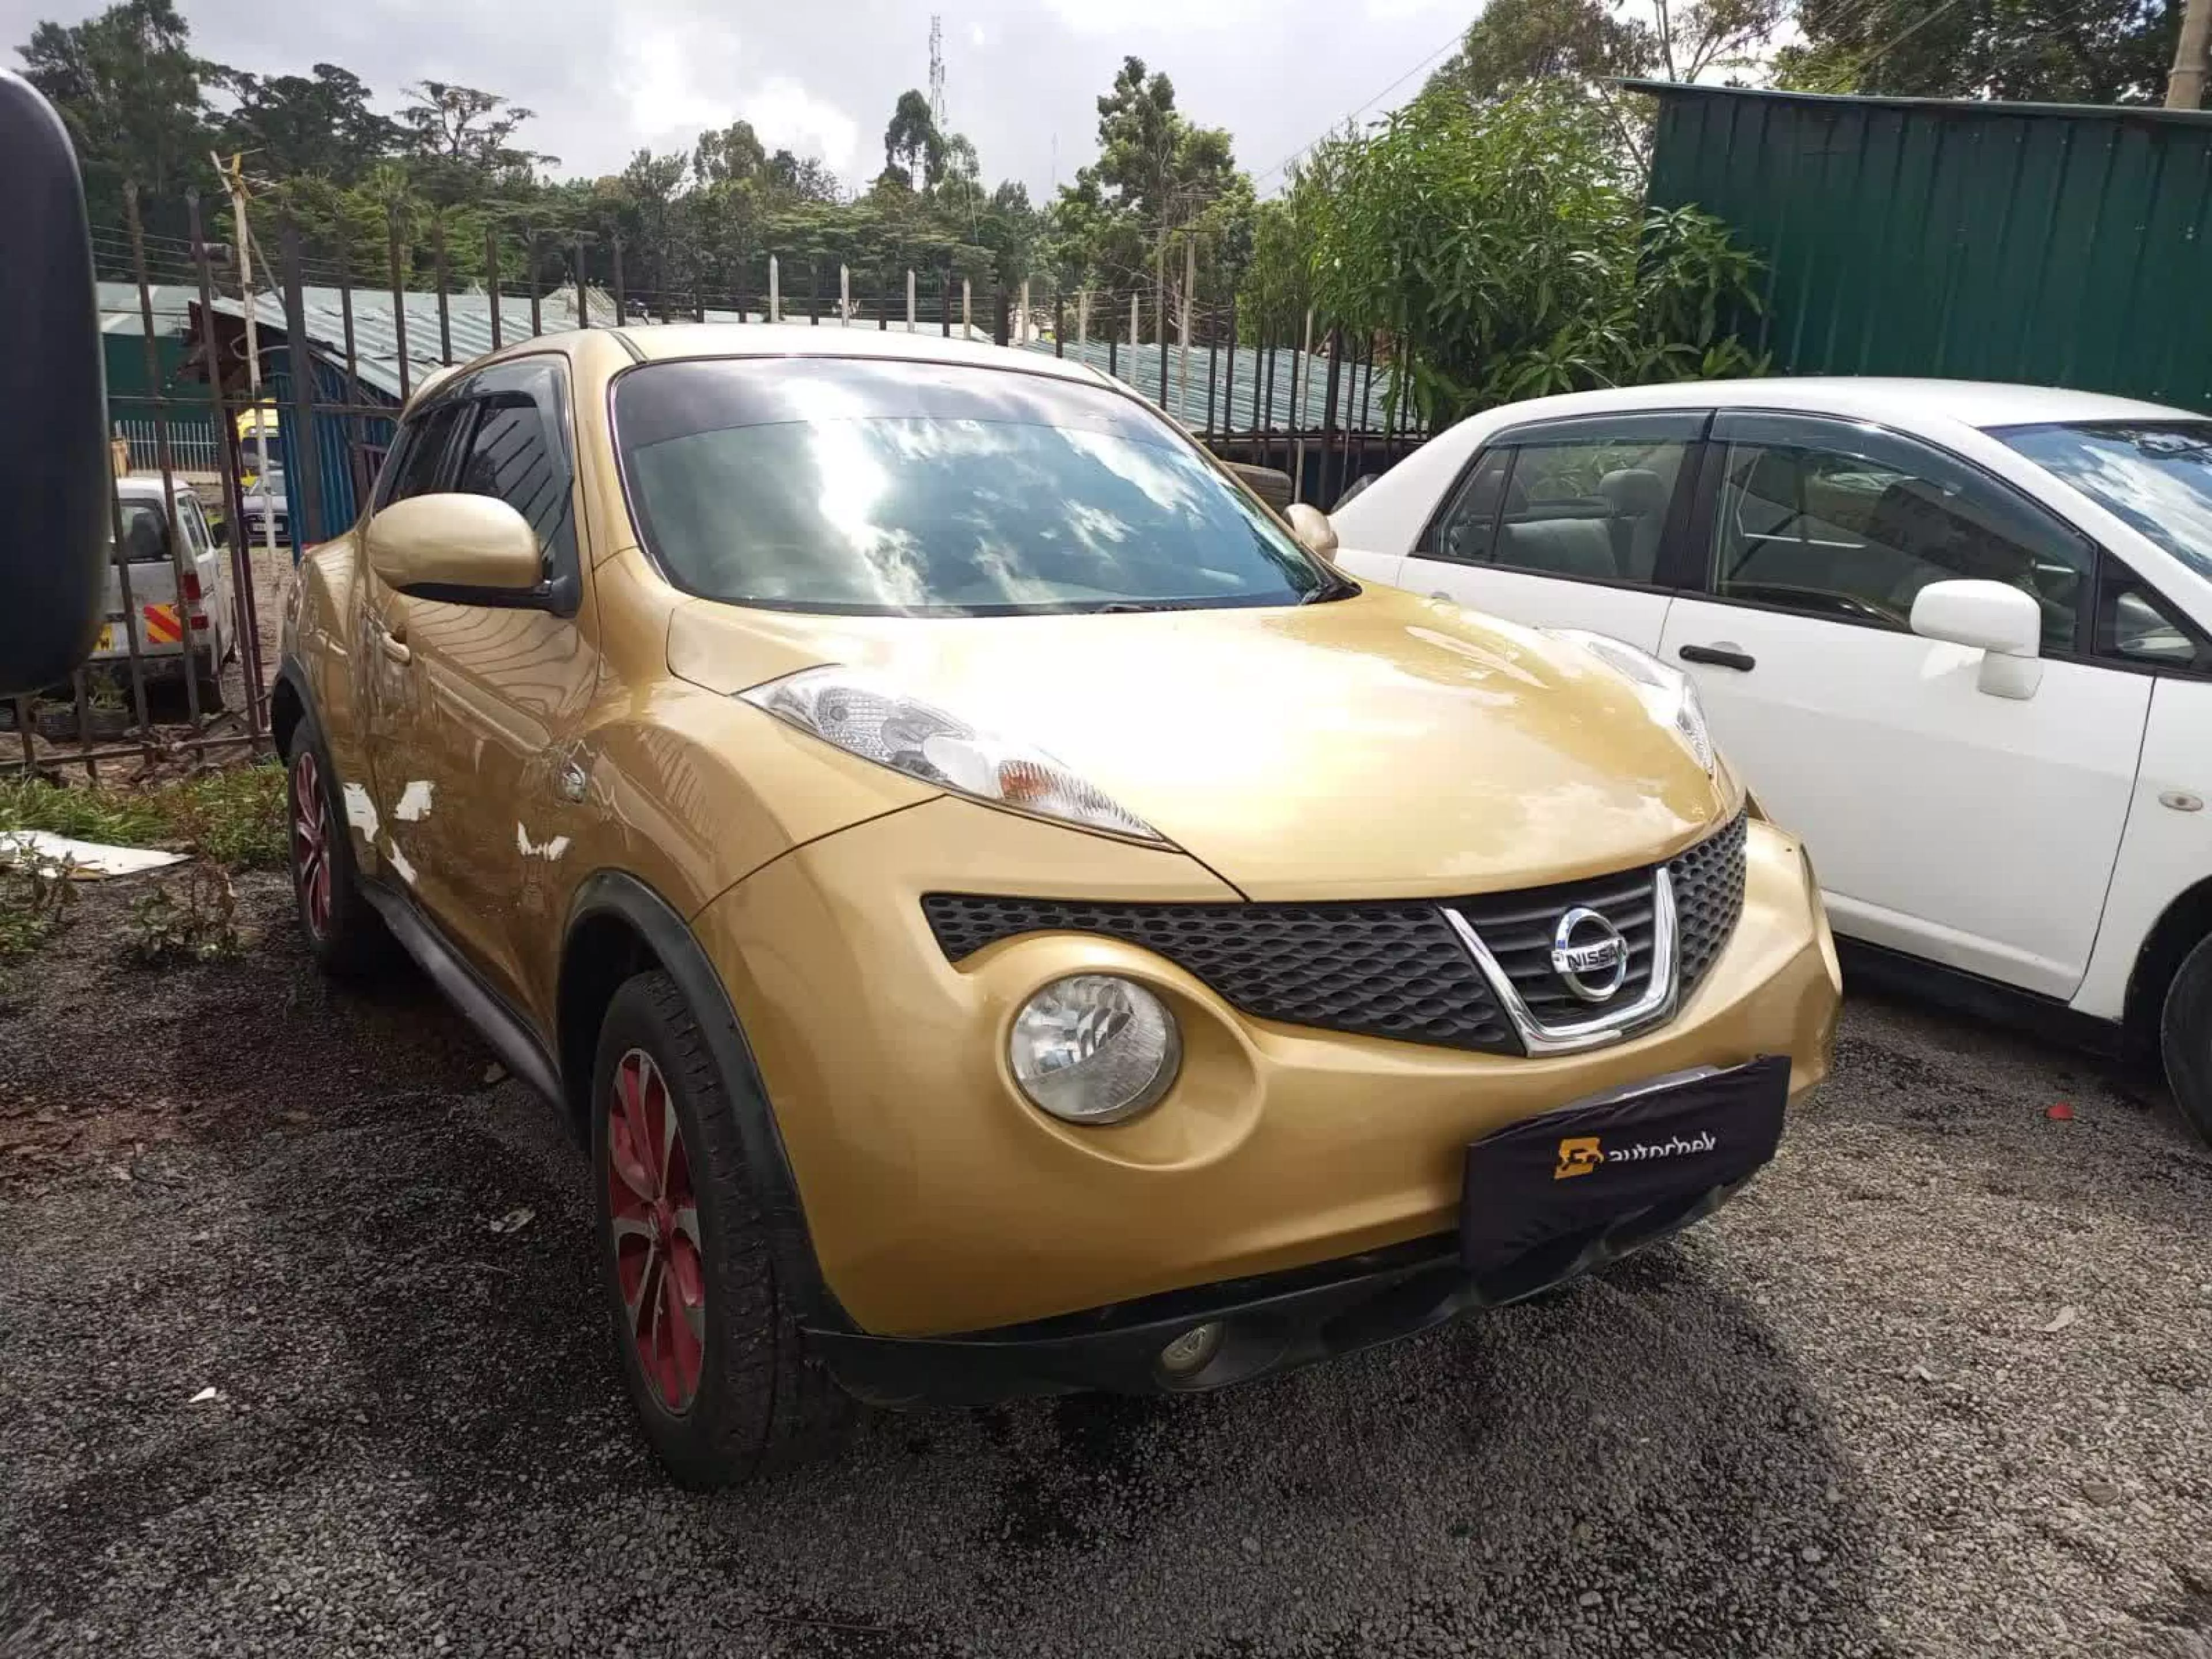 Nissan Juke - 2013